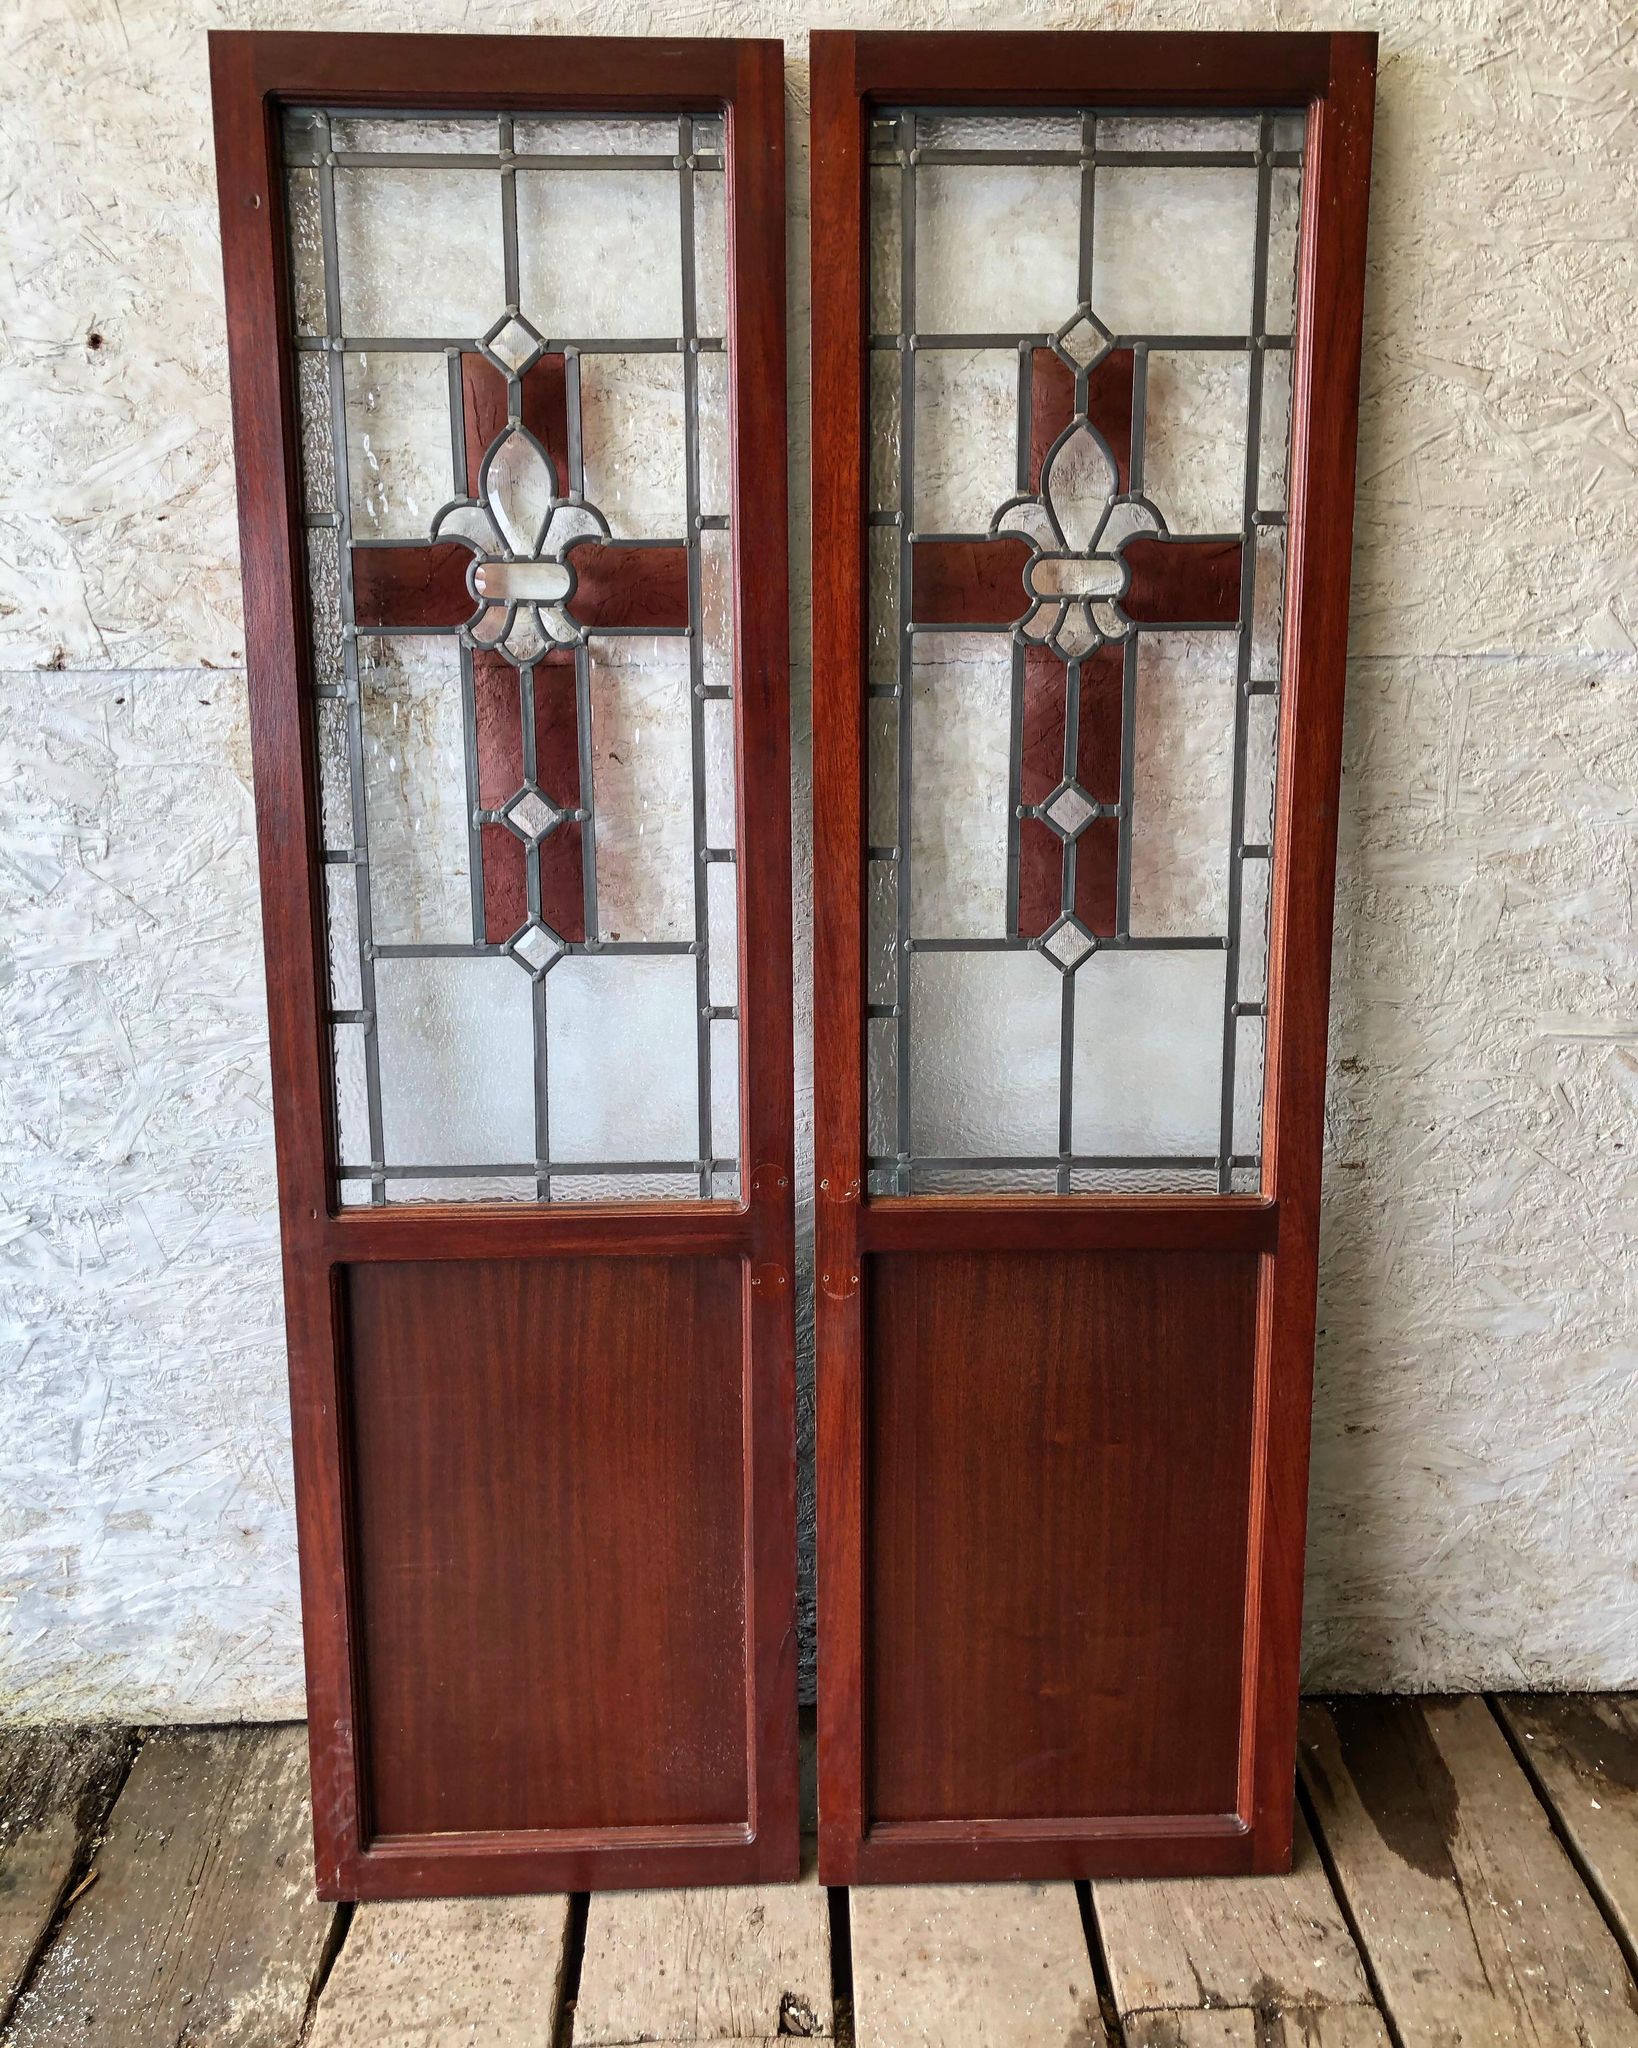 Vintage Cabinet Doors